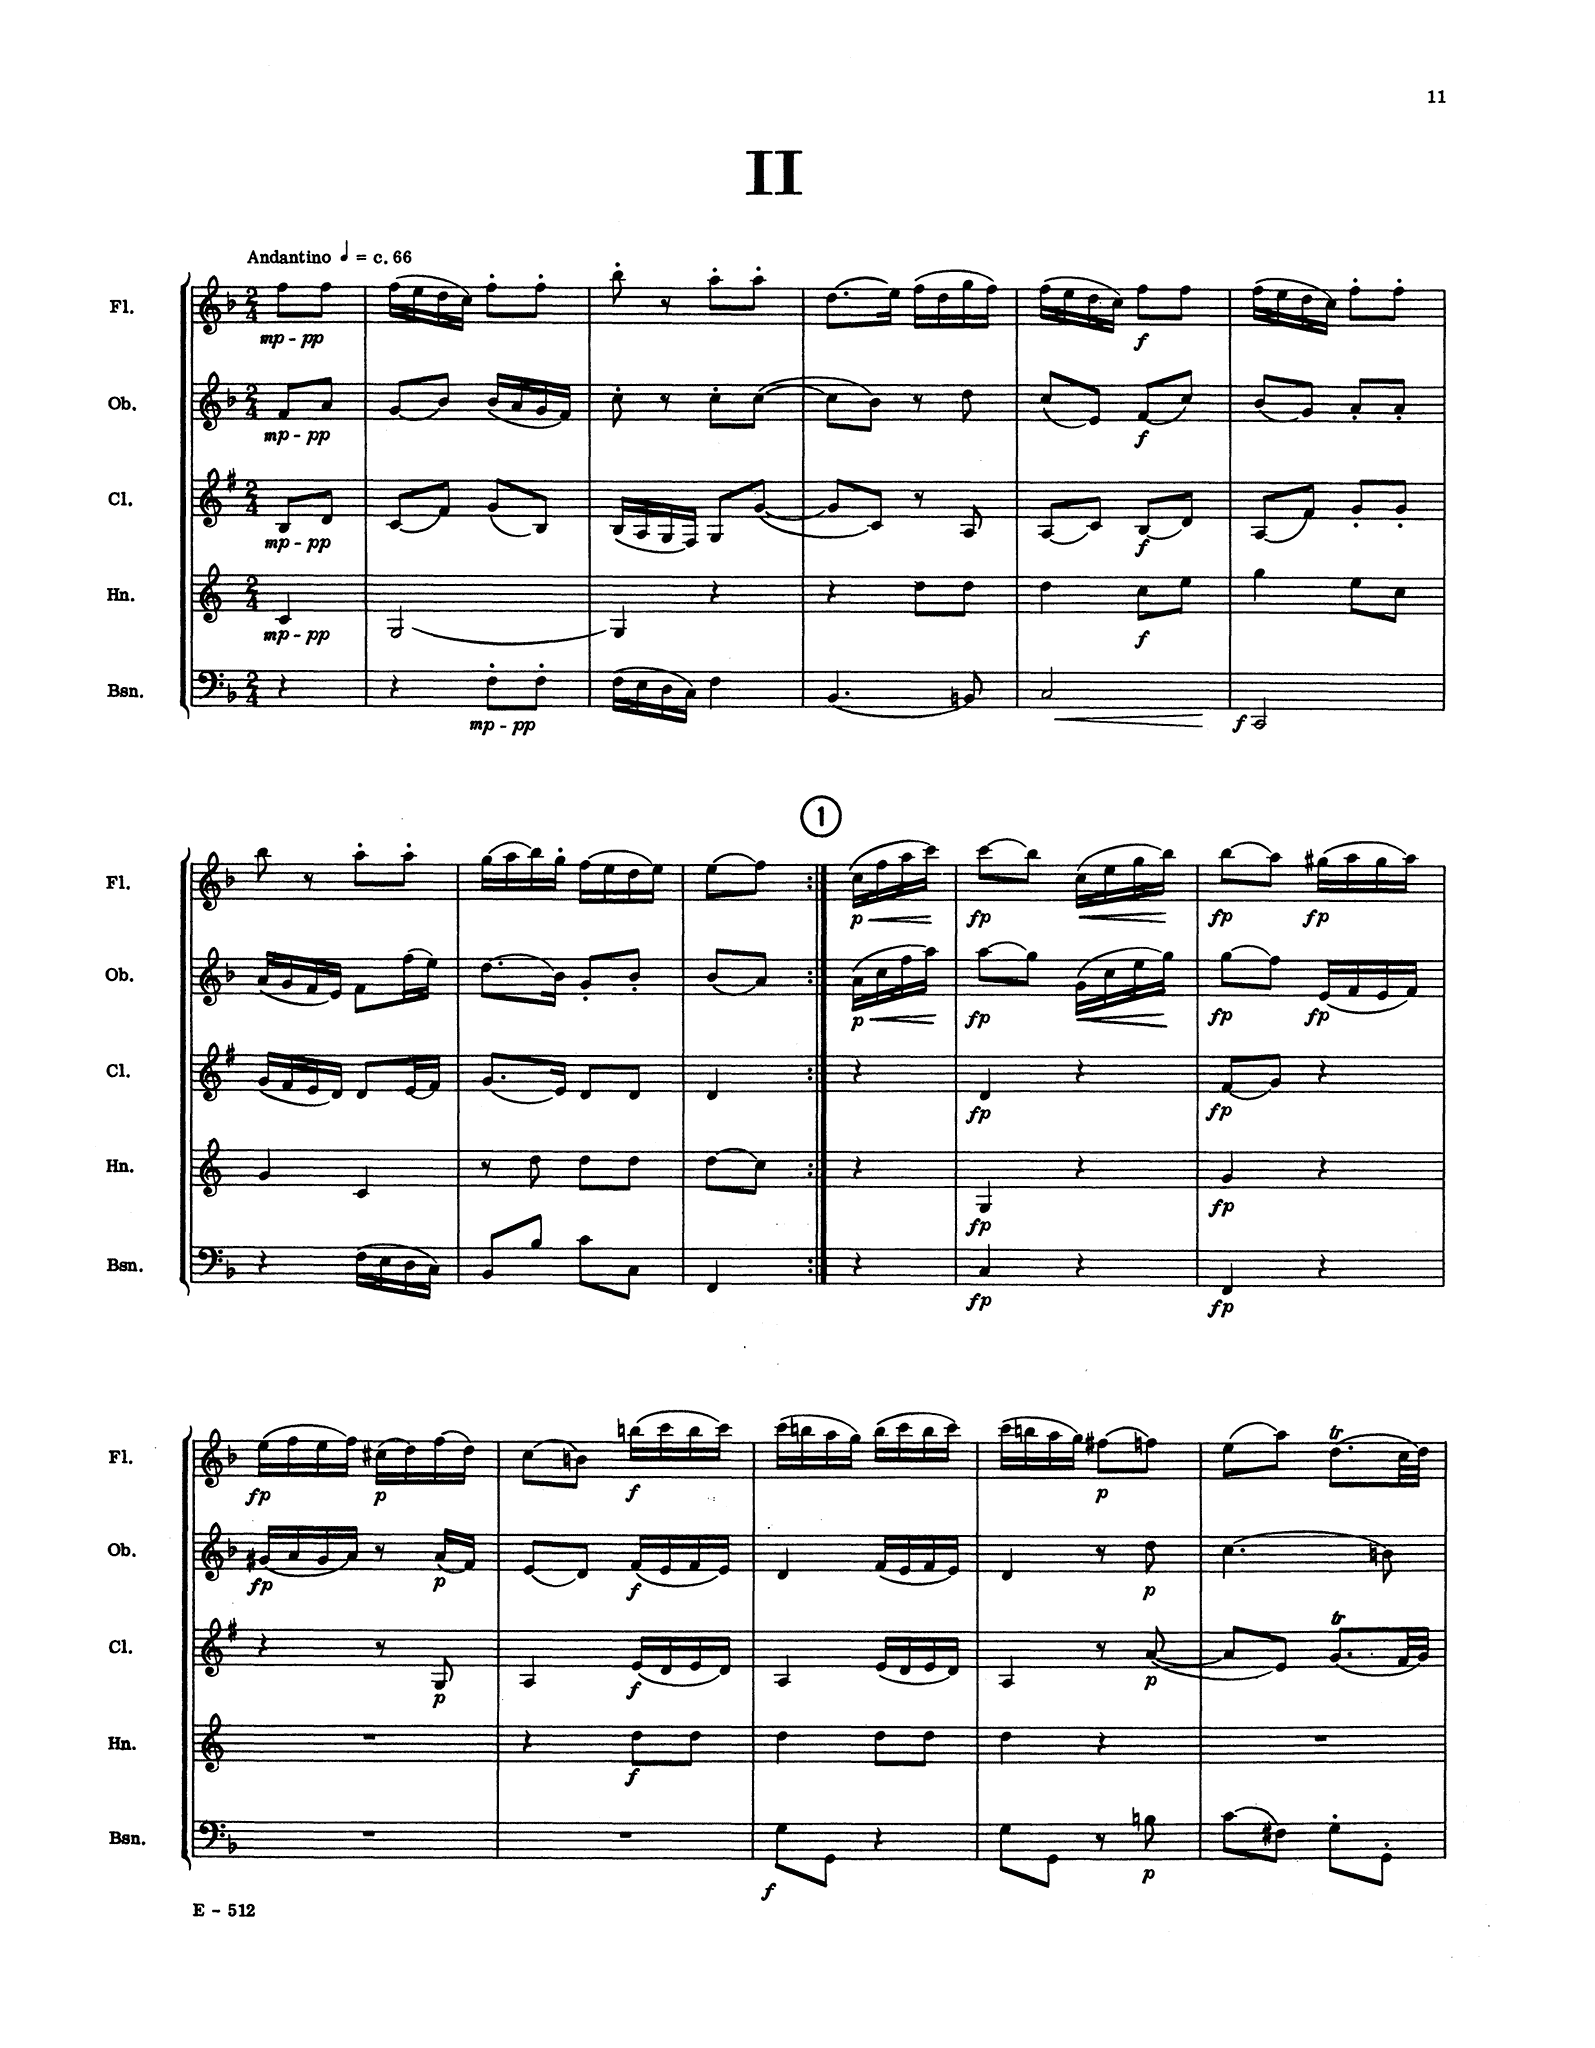 Mozart Divertimento No. 14, K. 270 wind quintet arrangement - Movement 2